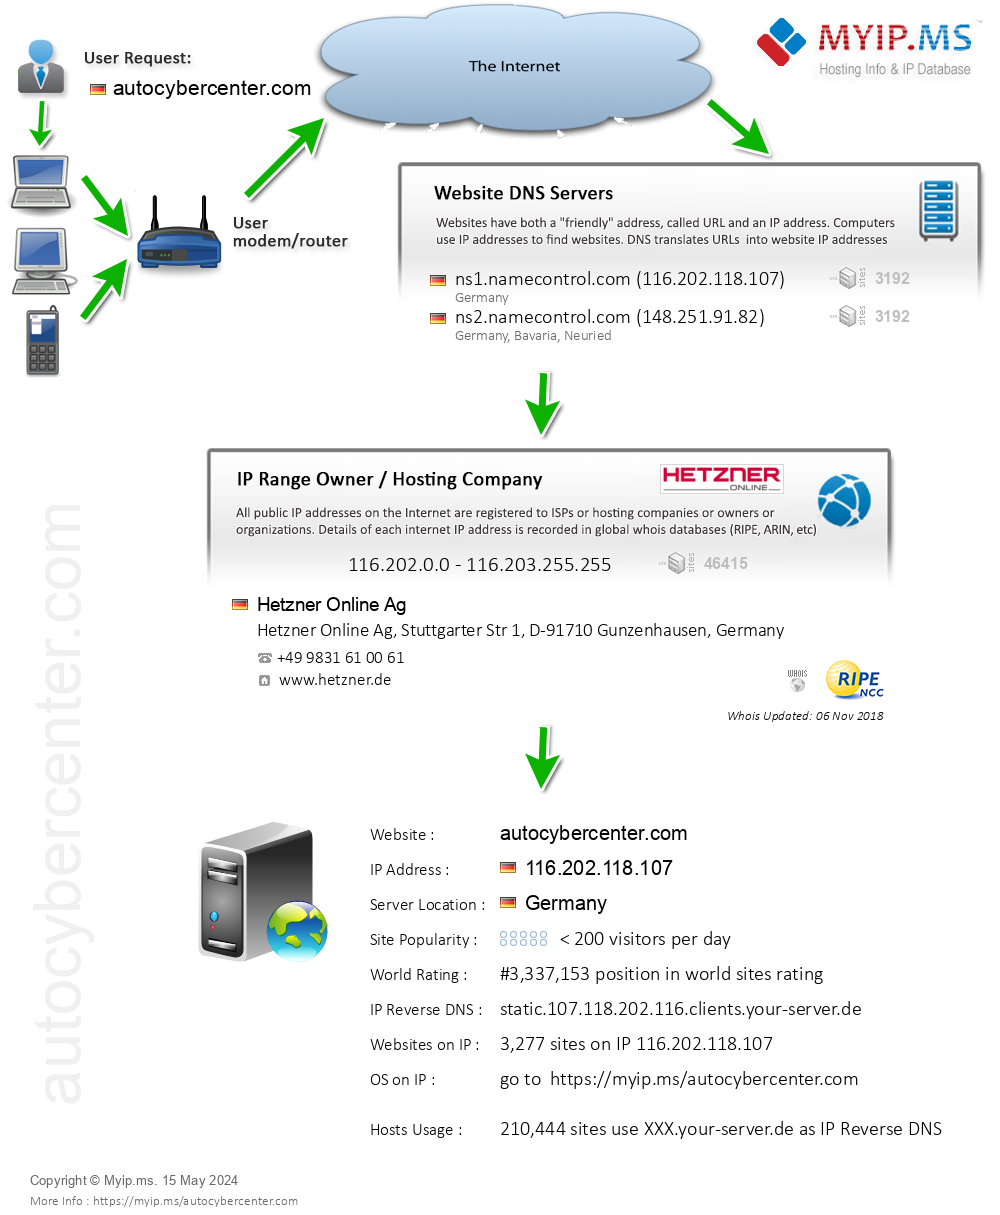 Autocybercenter.com - Website Hosting Visual IP Diagram